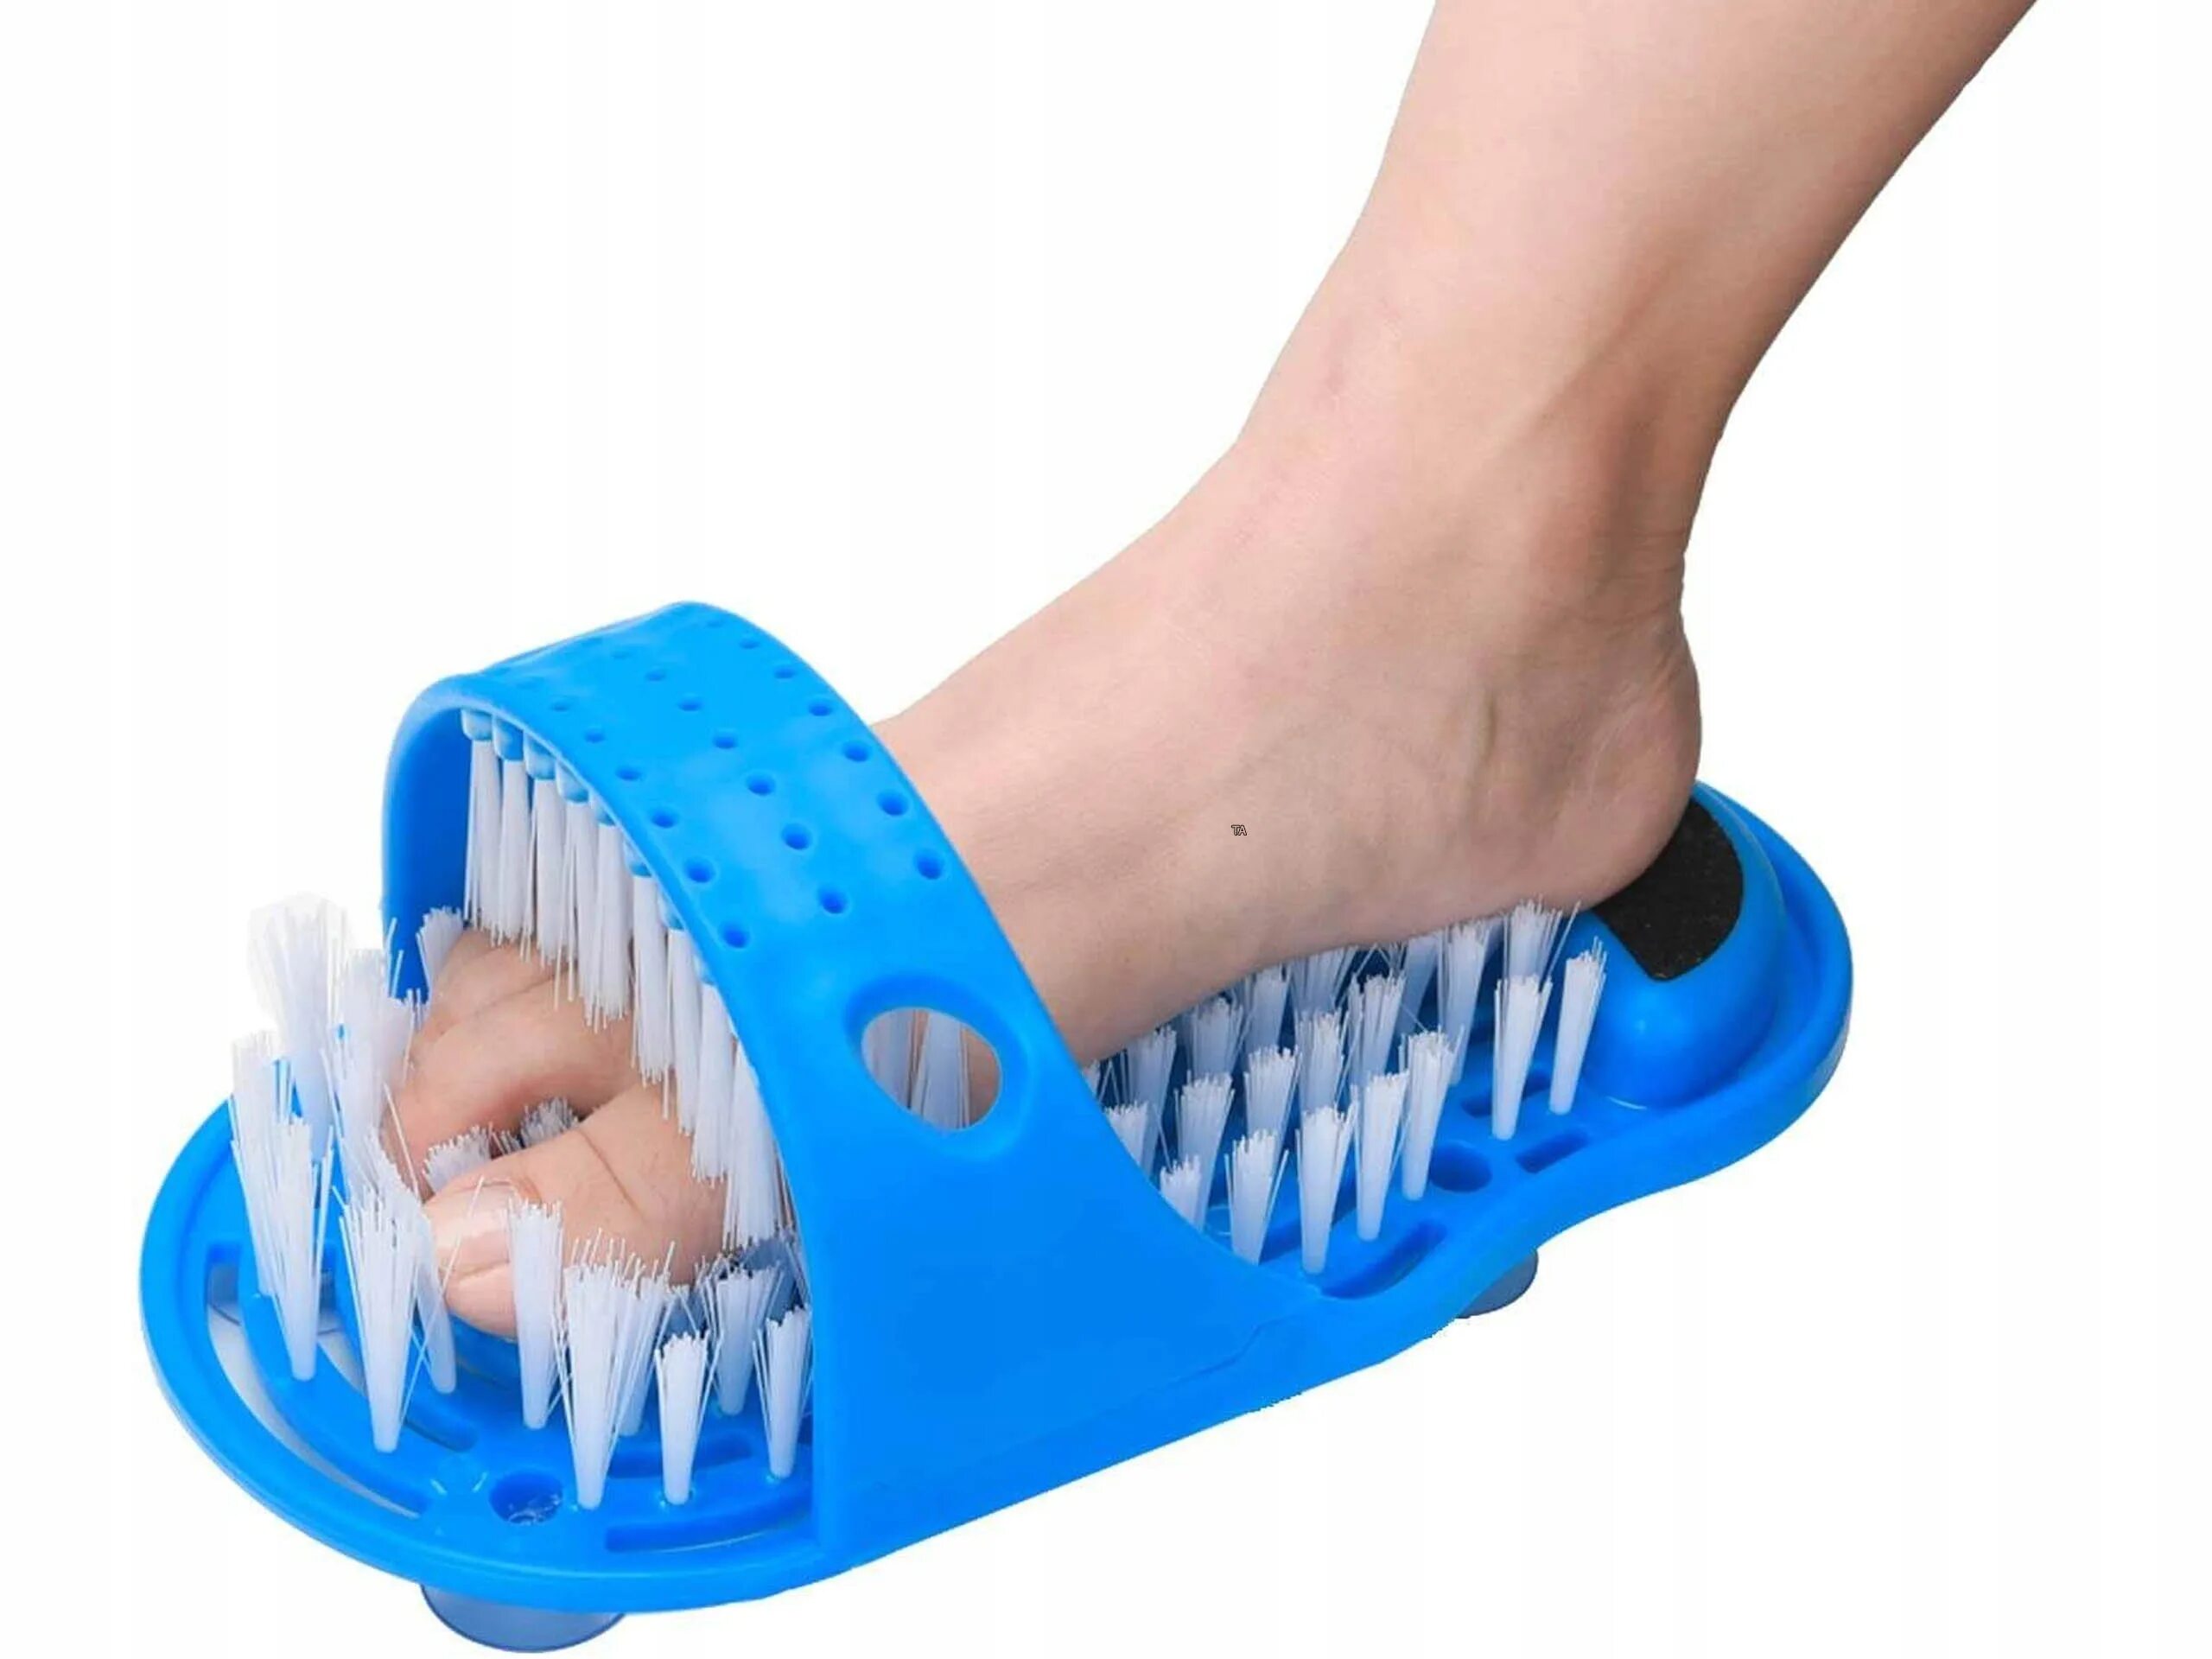 Тапки для мытья ног easy feet (ИЗИ фит)15.7. Массажные тапочки для душа с пемзой simple Slippers. Easy feet массажные тапочки. Спа-система easy feet массажные тапочки-шлепанцы ИЗИ фит.